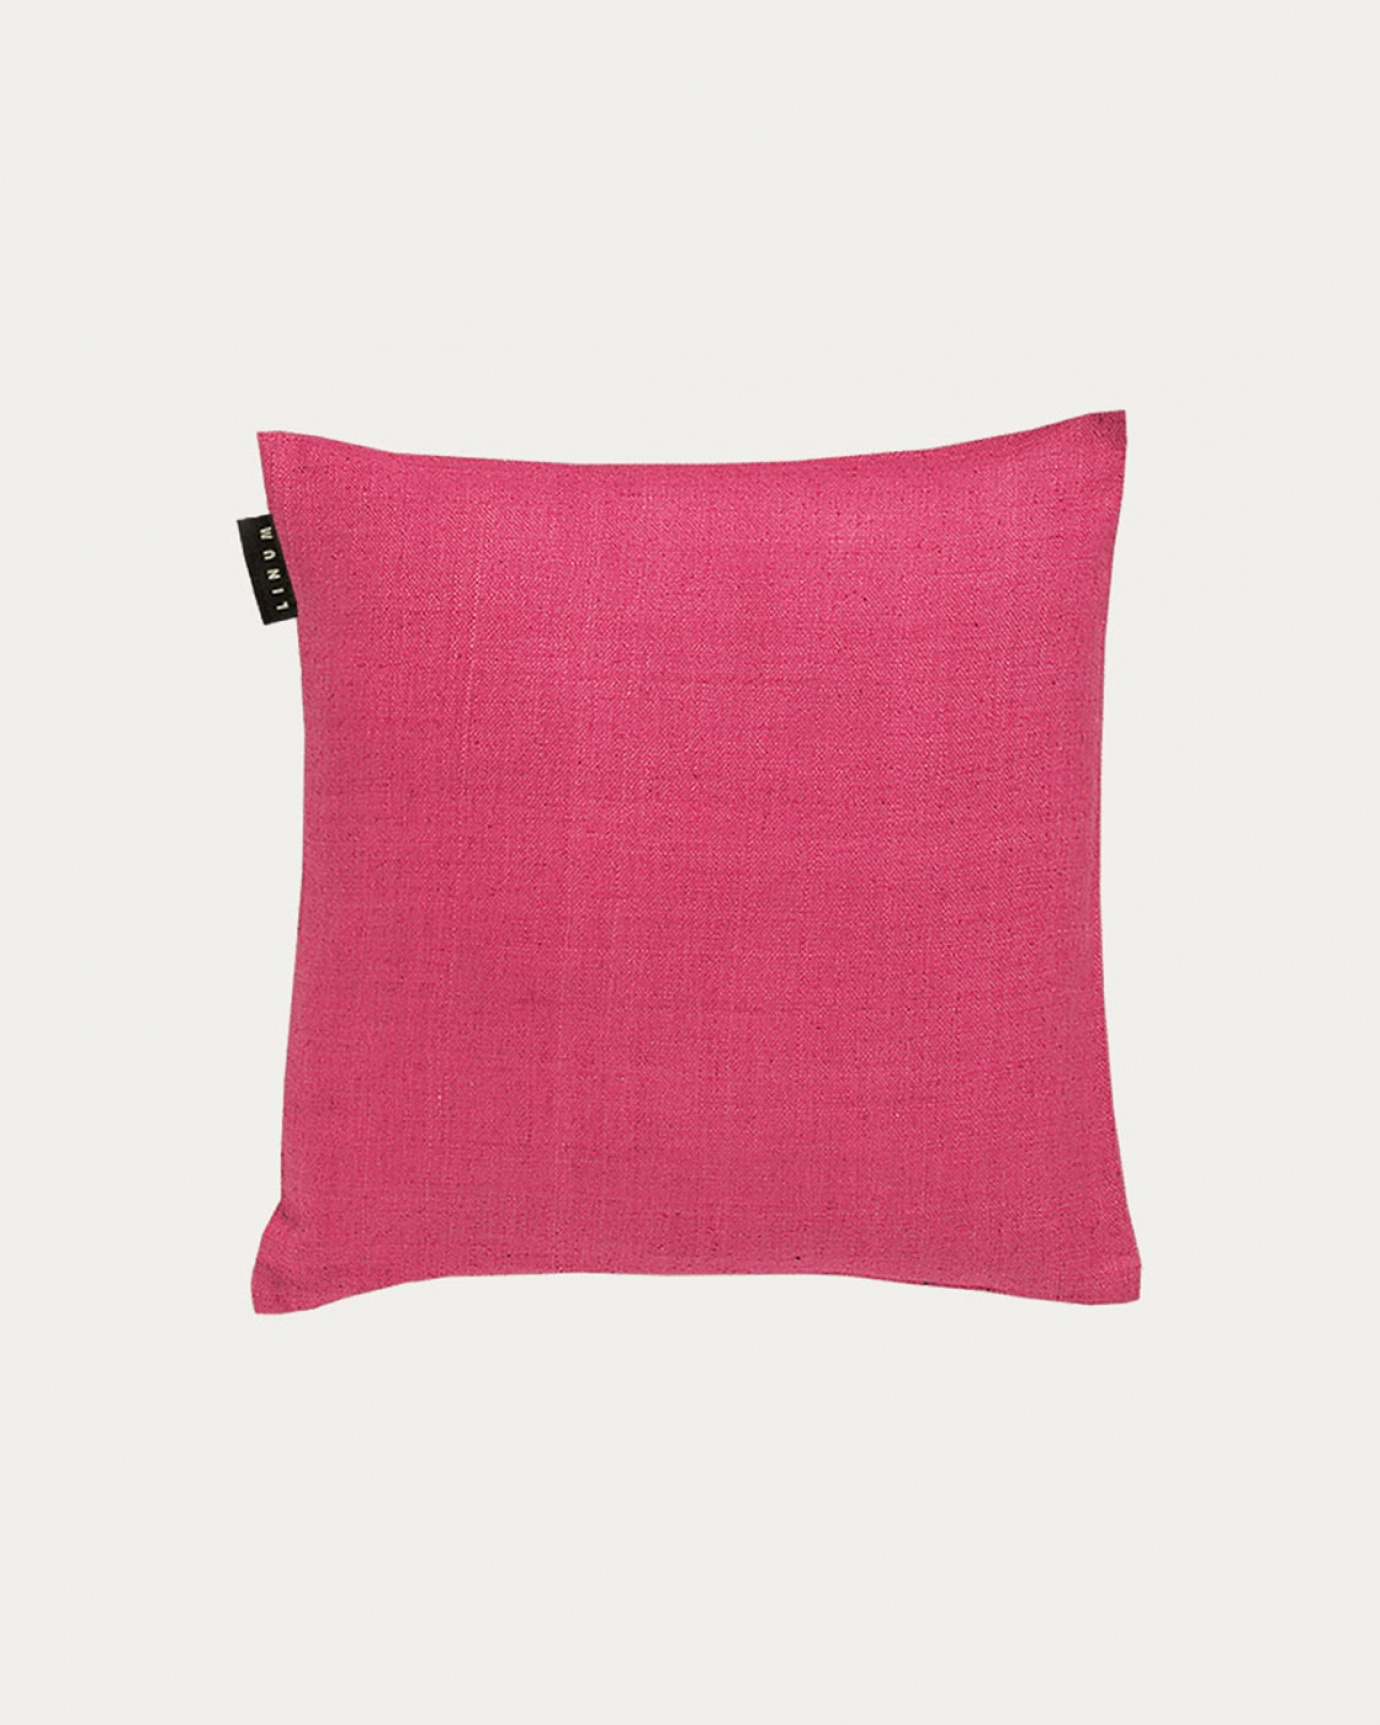 Immagine prodotto rosa scuro rosa SETA copricuscini realizzata in 100% seta grezza che dona una bella lucentezza da LINUM DESIGN. Dimensioni 40x40 cm.